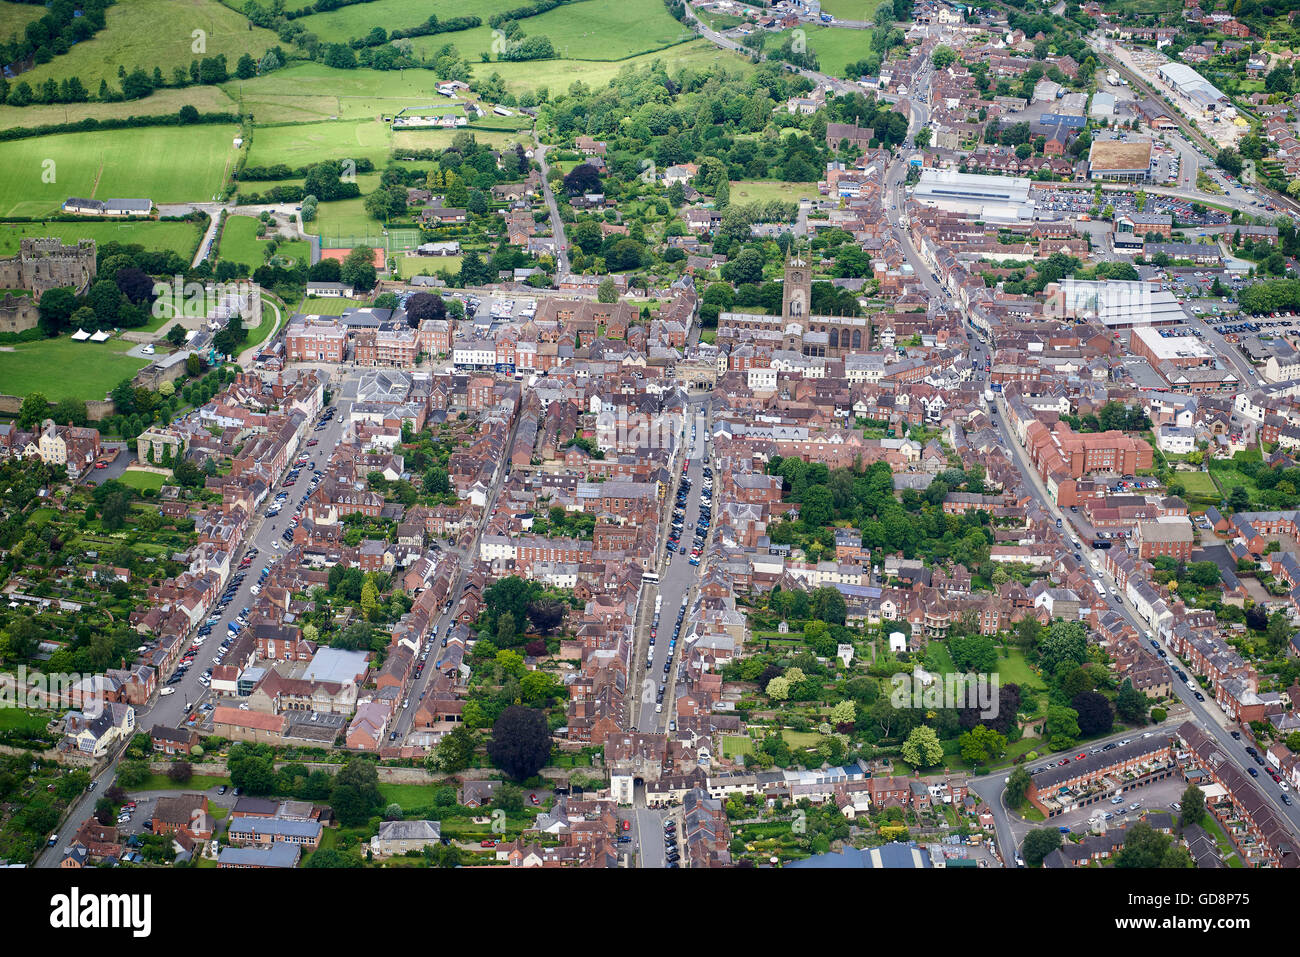 Ludlow Shropshire, à partir de l'air, le sud-ouest de l'Angleterre Banque D'Images